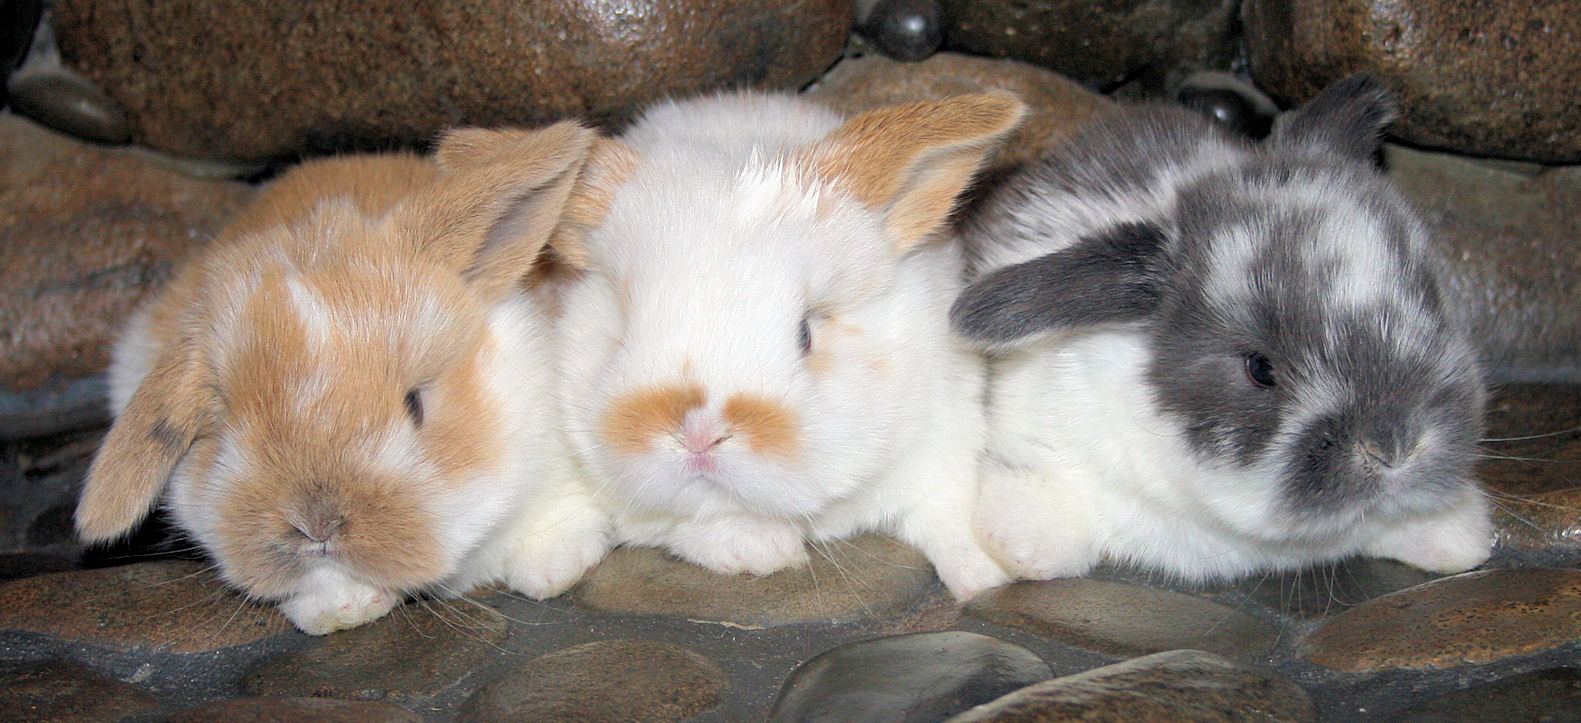 bunny trio 4